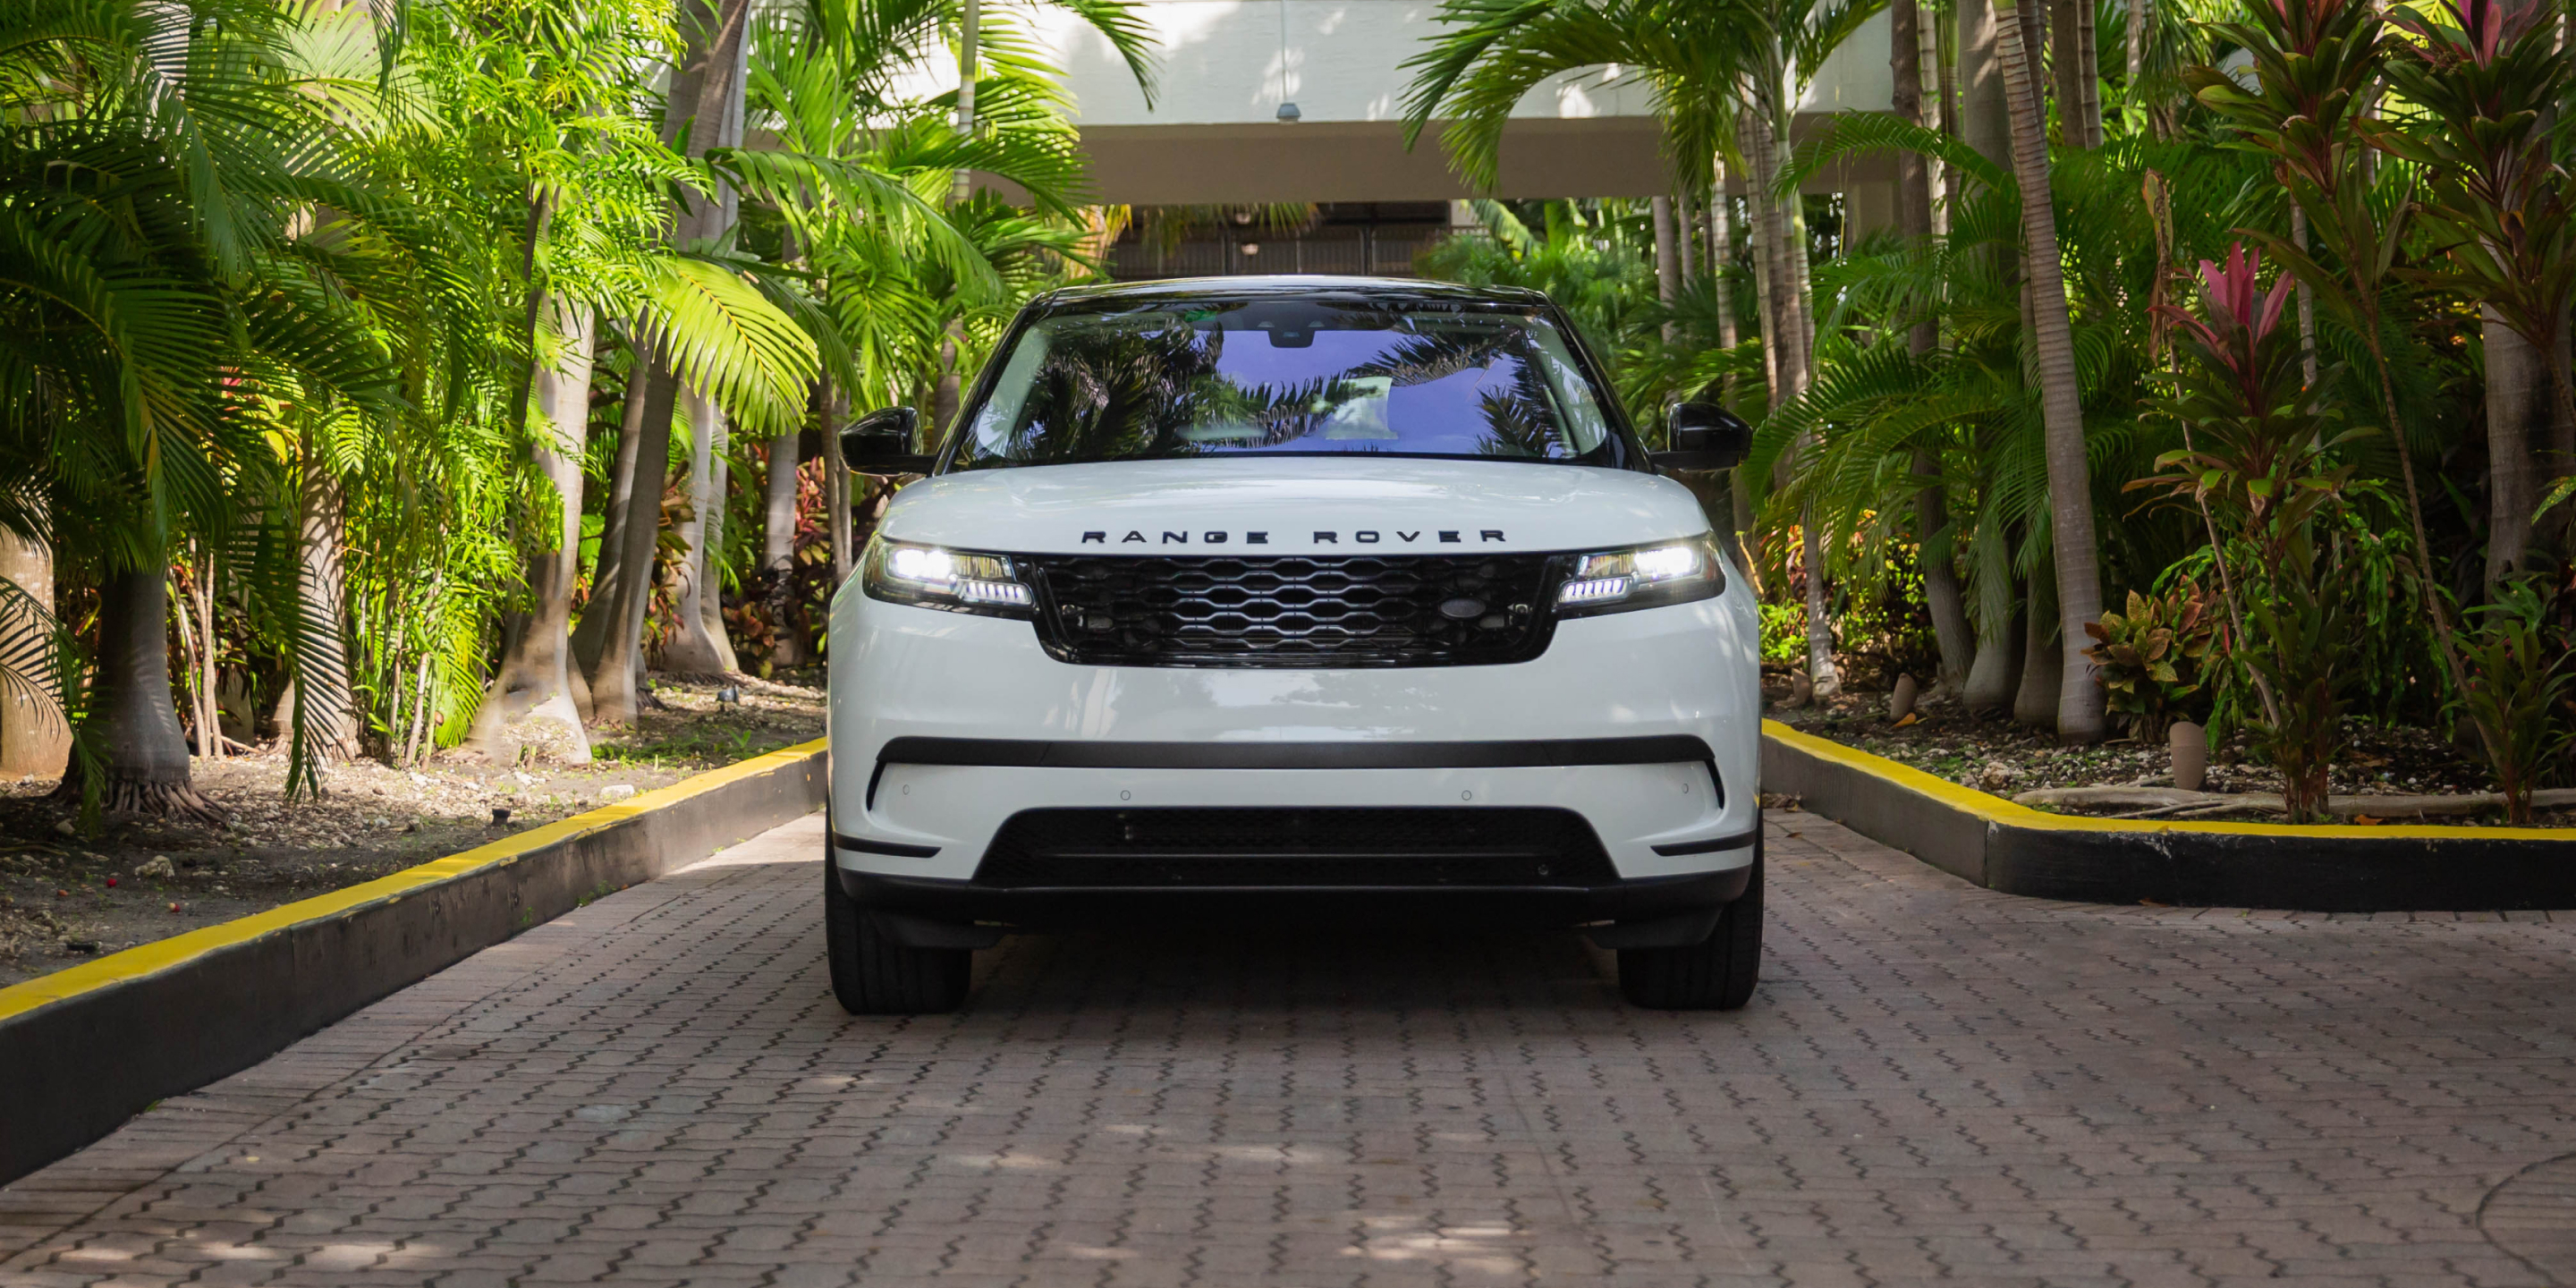 RealCar Range Rover Velar for rental